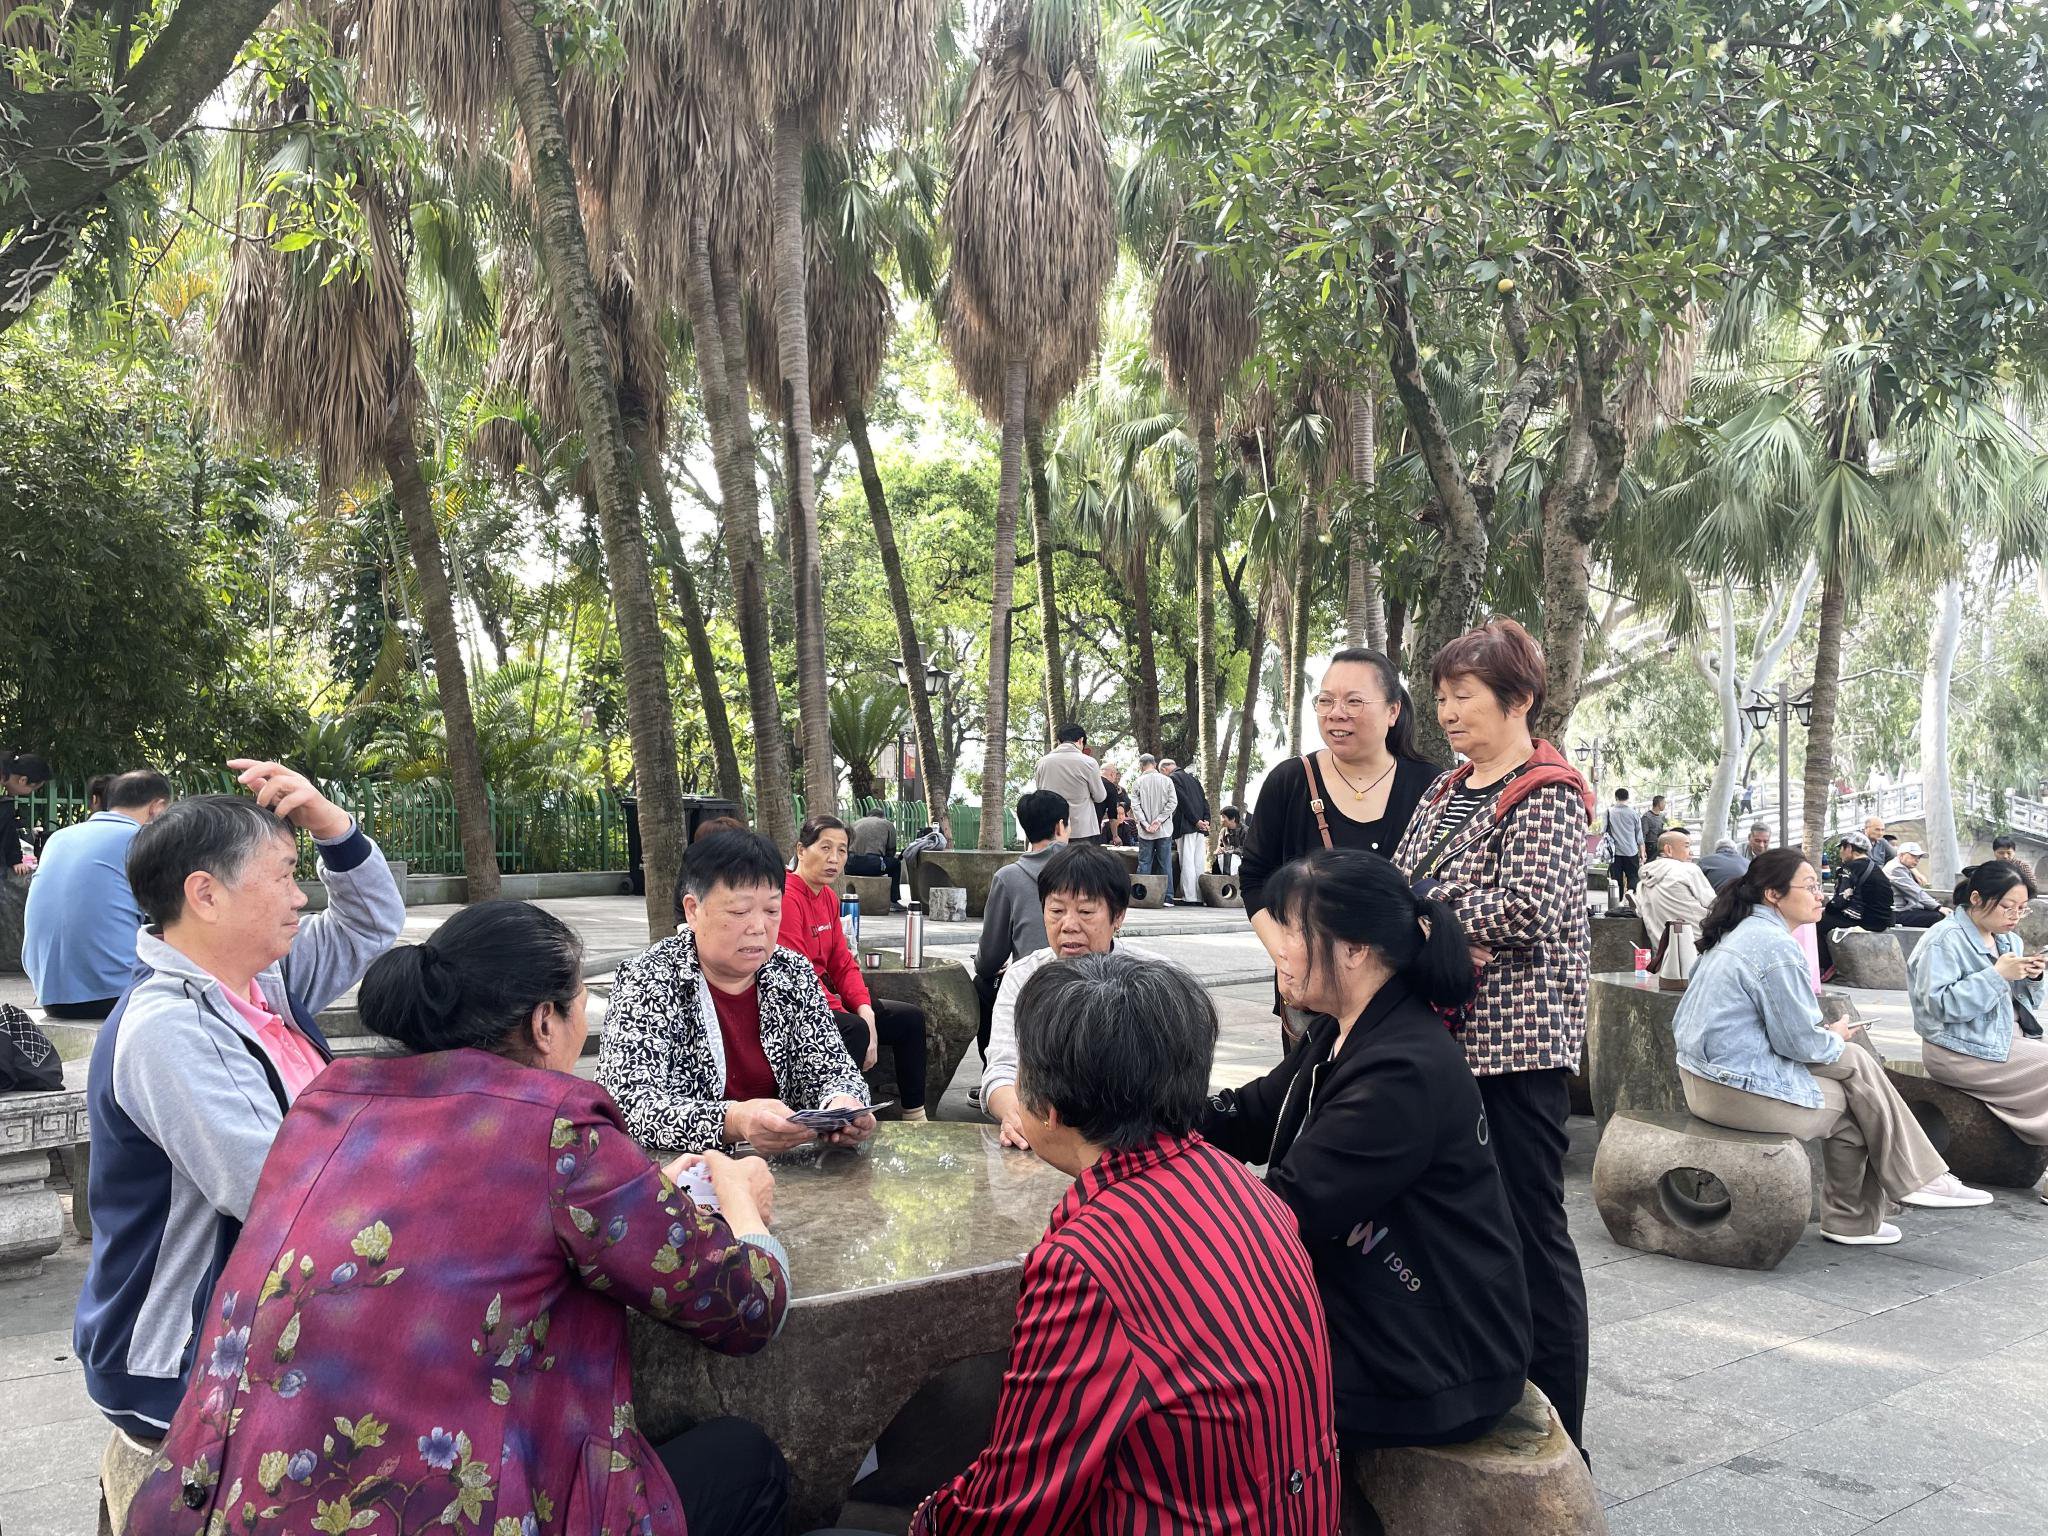 市民在擊楫碑附近玩牌取樂。新京報記者 張建林 攝